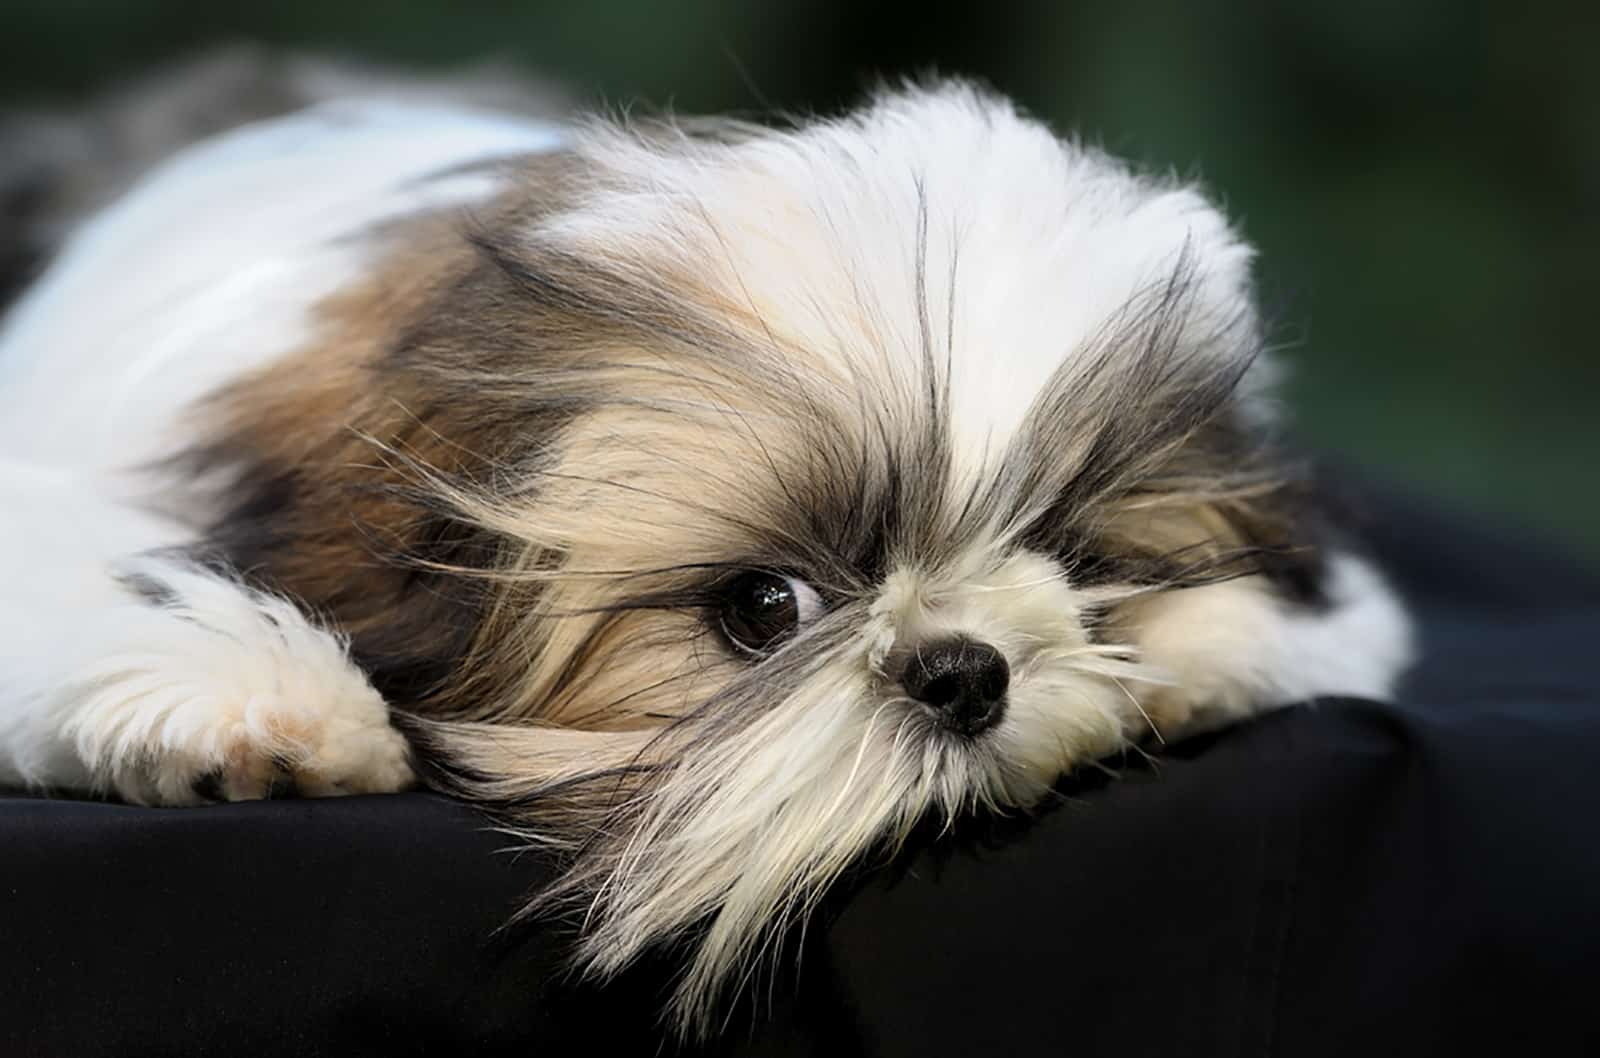 shih tzu puppy lying on black pillow